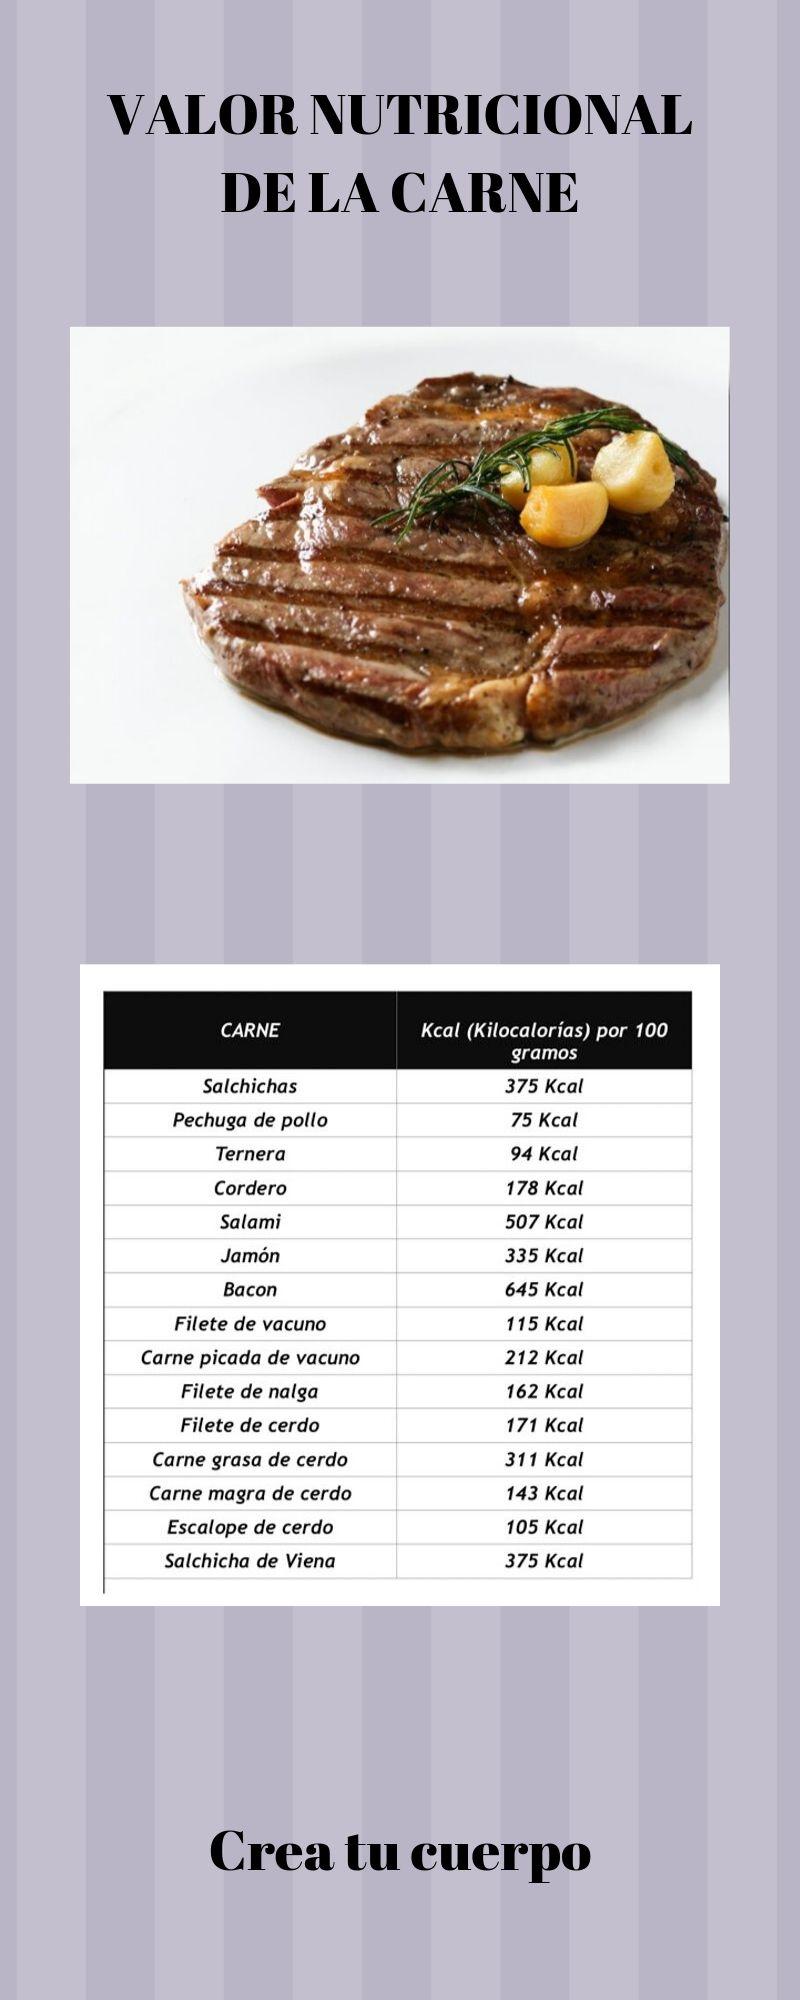 Tabla de calorías de la carne 